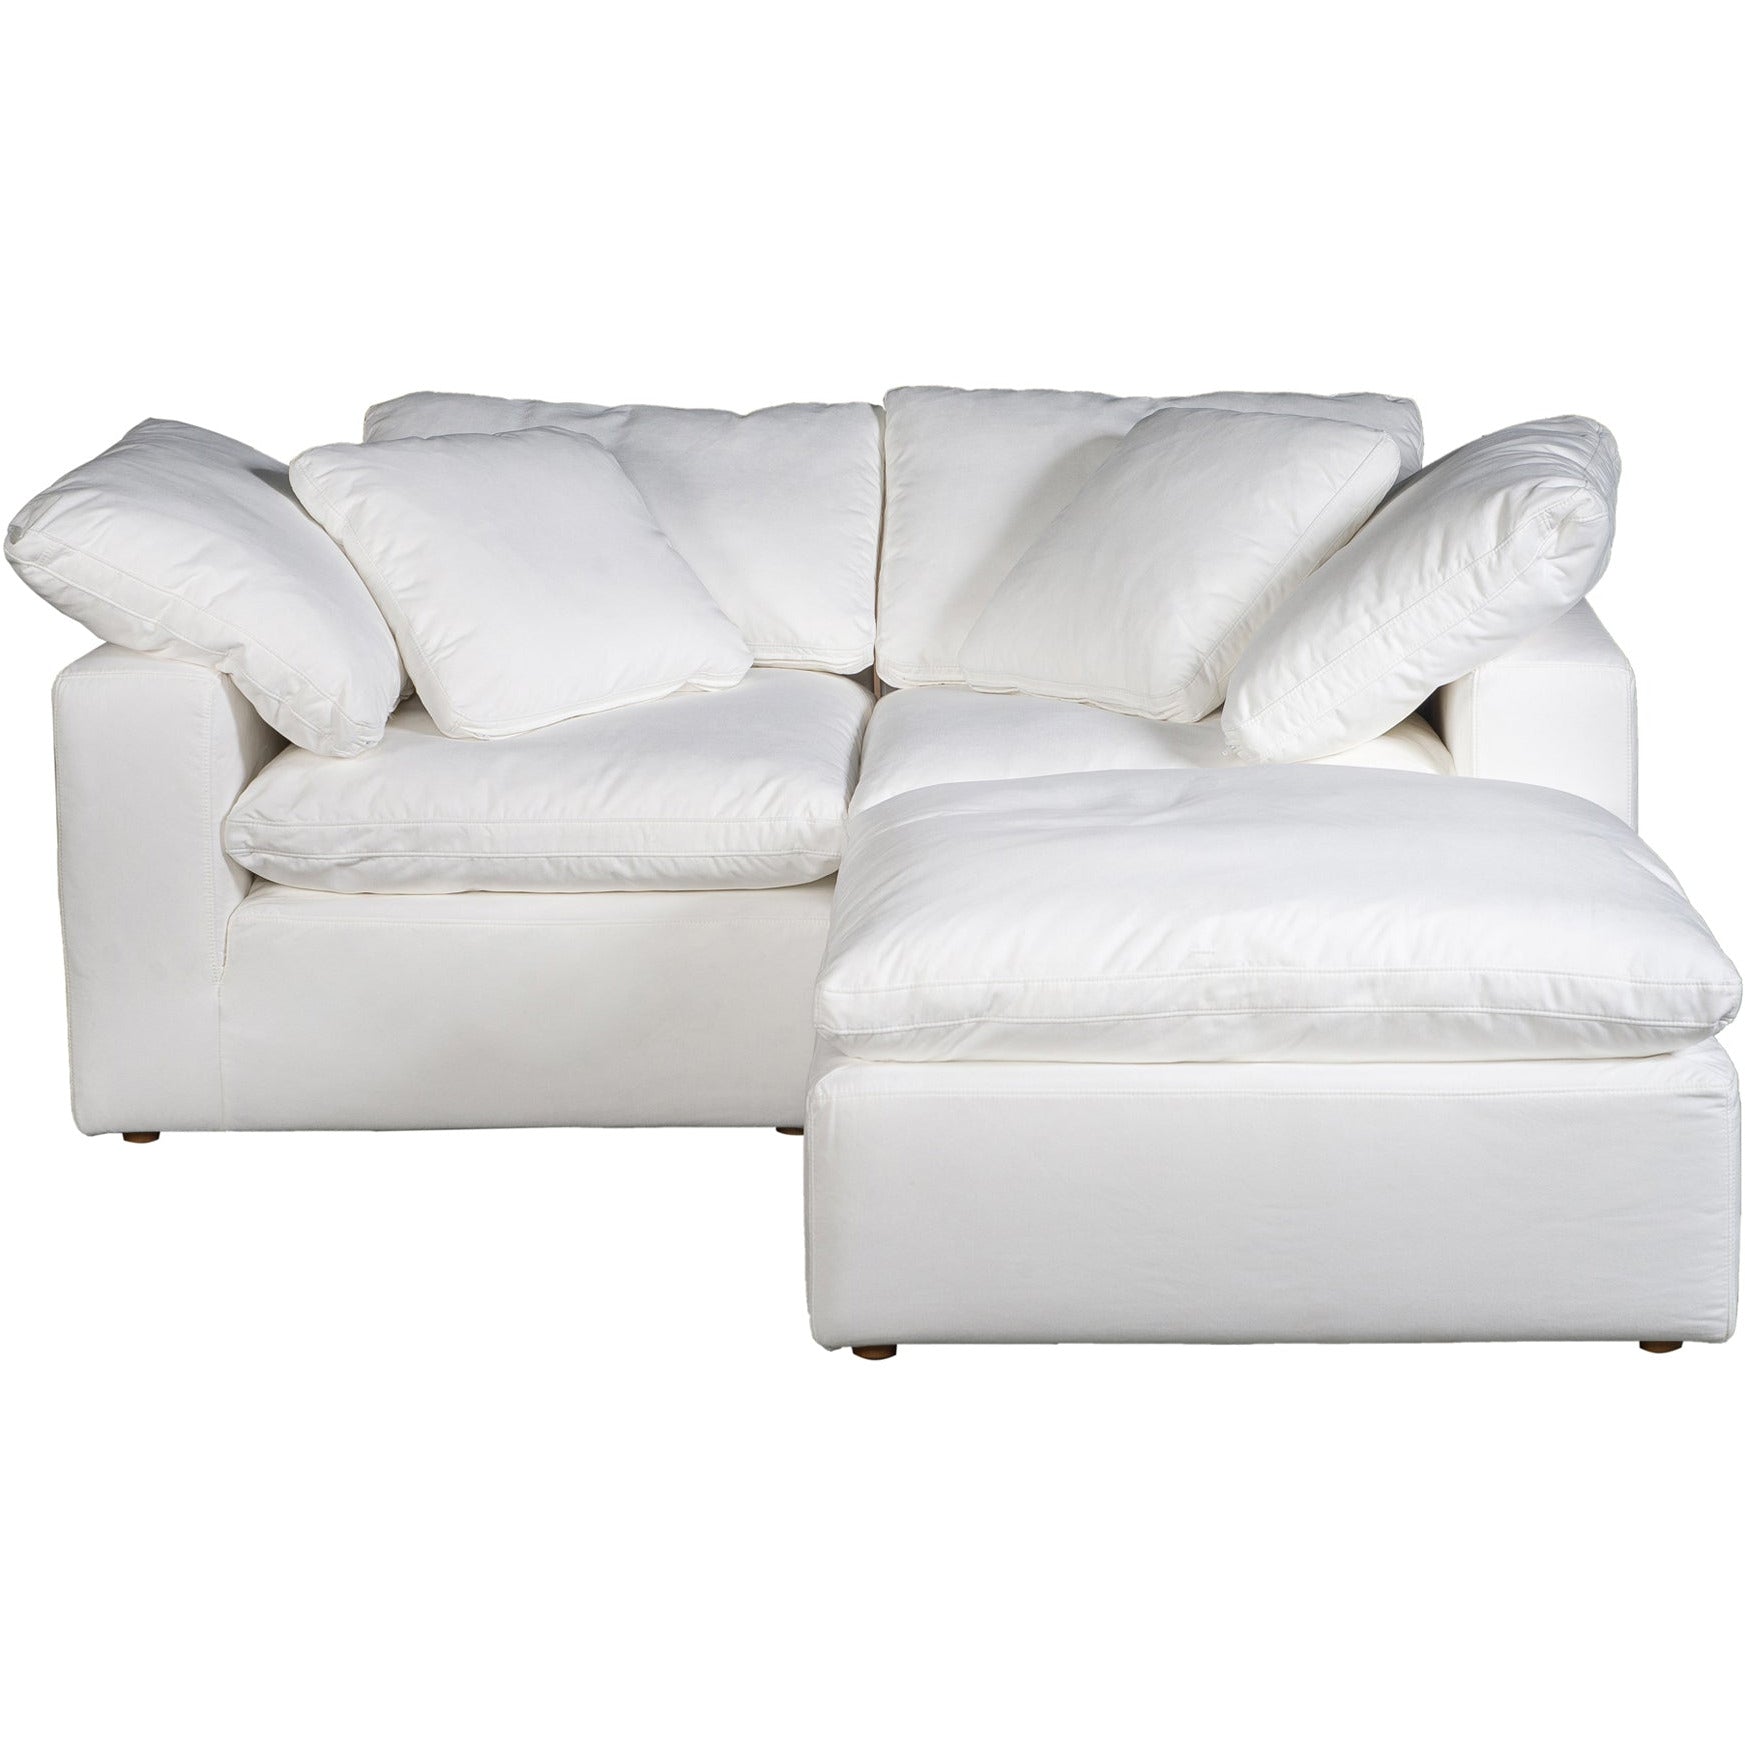 Nook Terra Condo Sectional Sofa